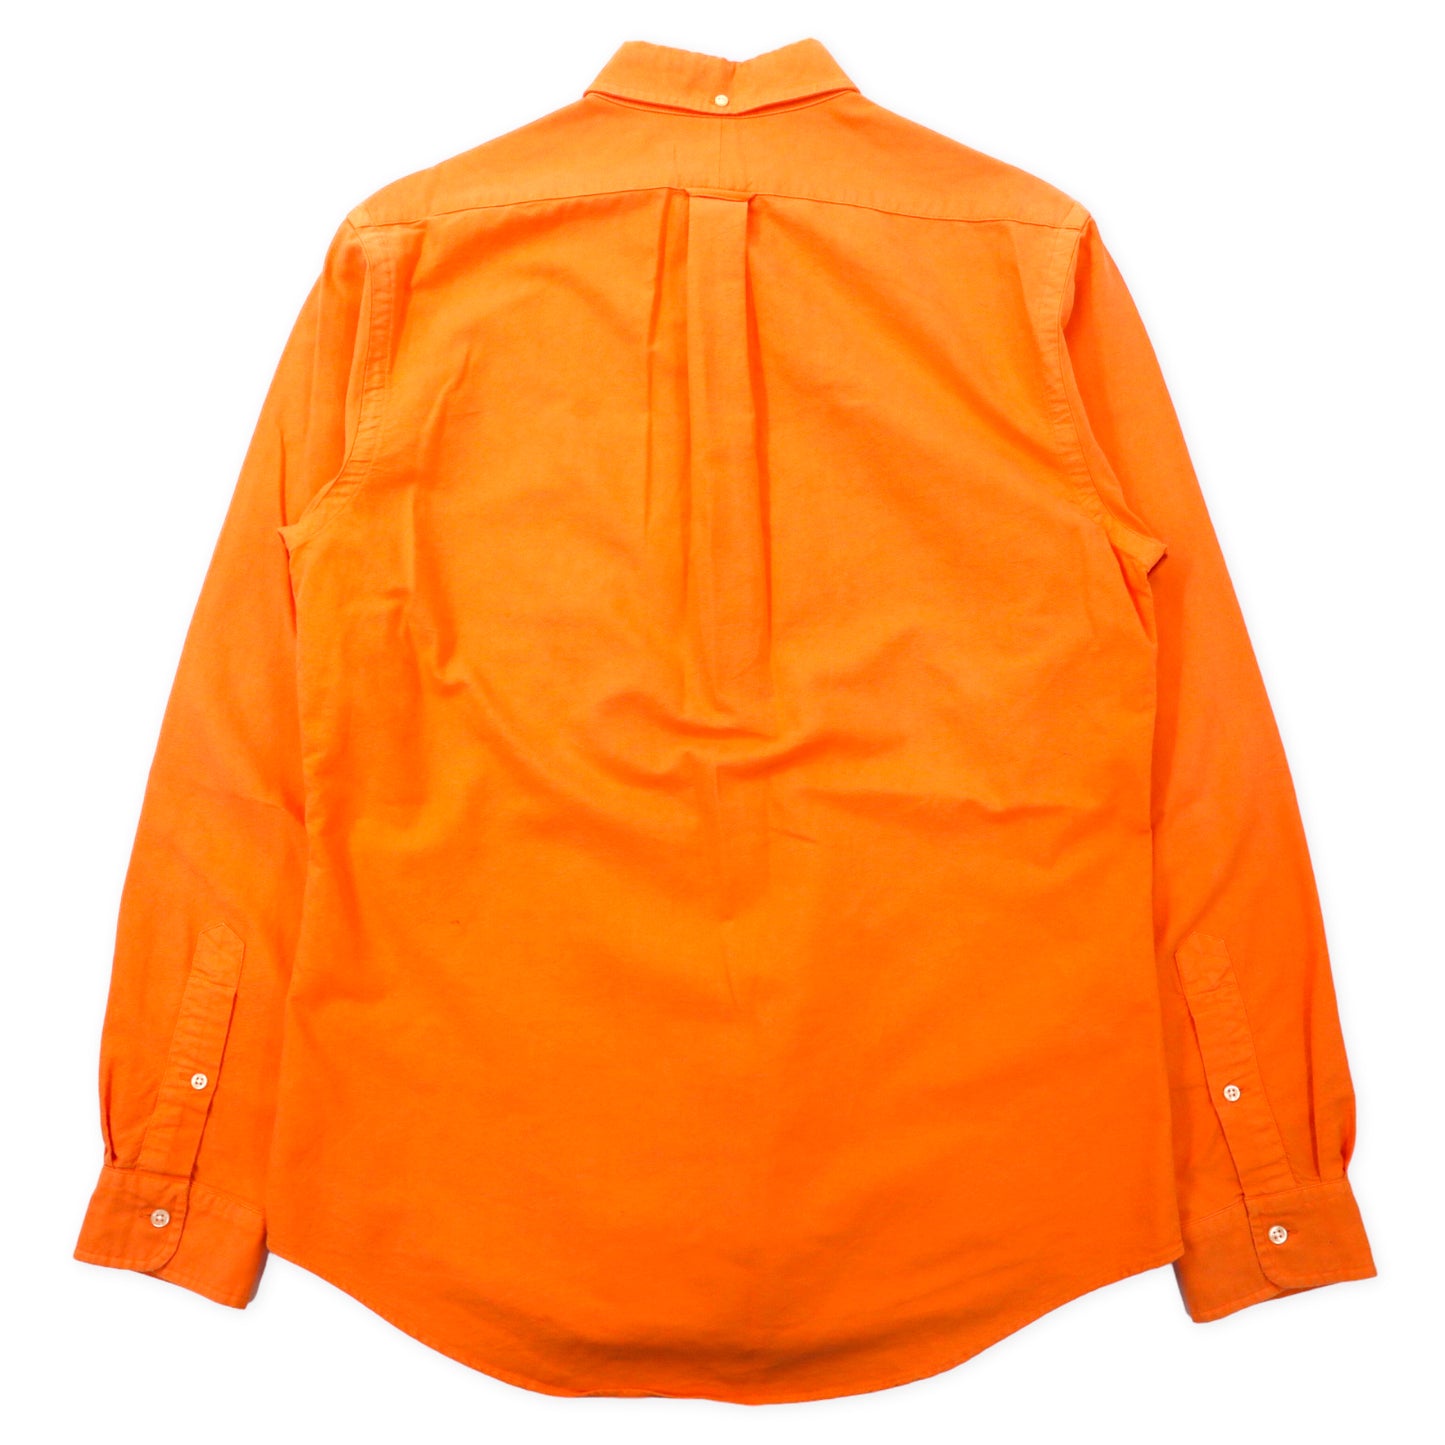 RALPH LAUREN ボタンダウンシャツ M オレンジ コットン CUSTOM FIT スモールポニー刺繍